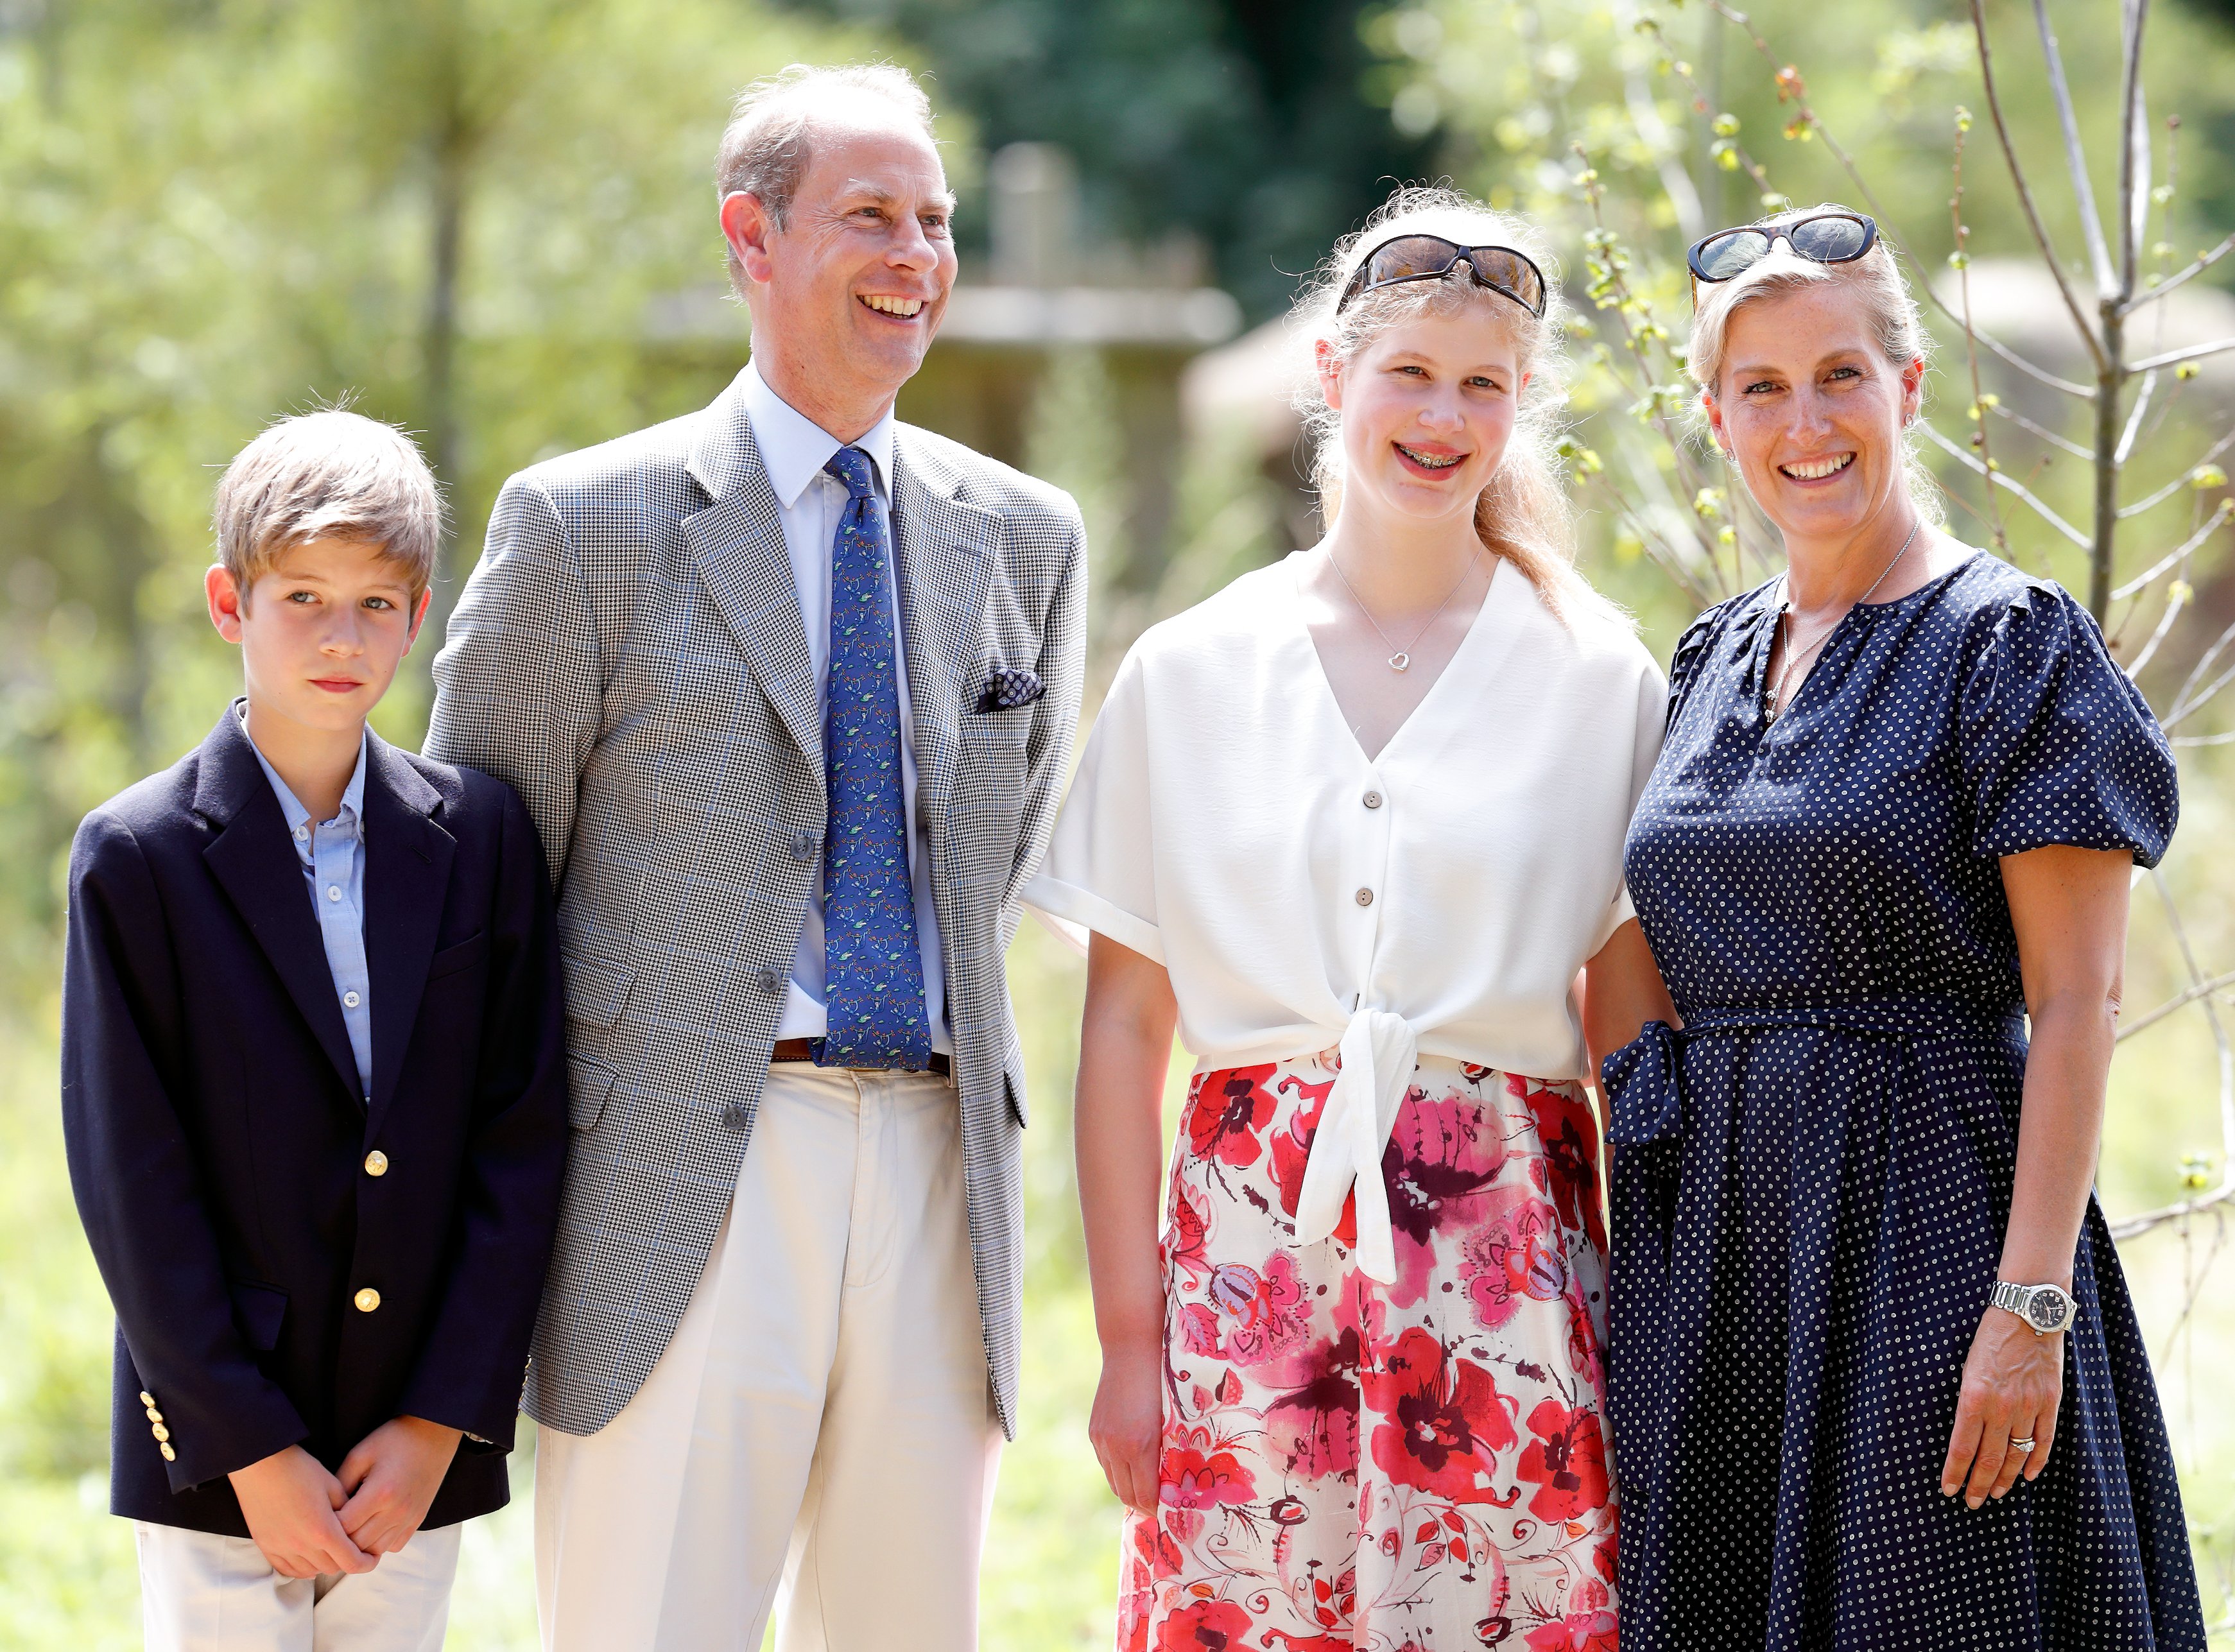 James, vizconde de Severn, el príncipe Edward, Lady Louise Windsor y Sophie, condesa de Wessex visitan el proyecto The Wild Place el 23 de julio de 2019, en Bristol, Inglaterra | Foto: Getty Images